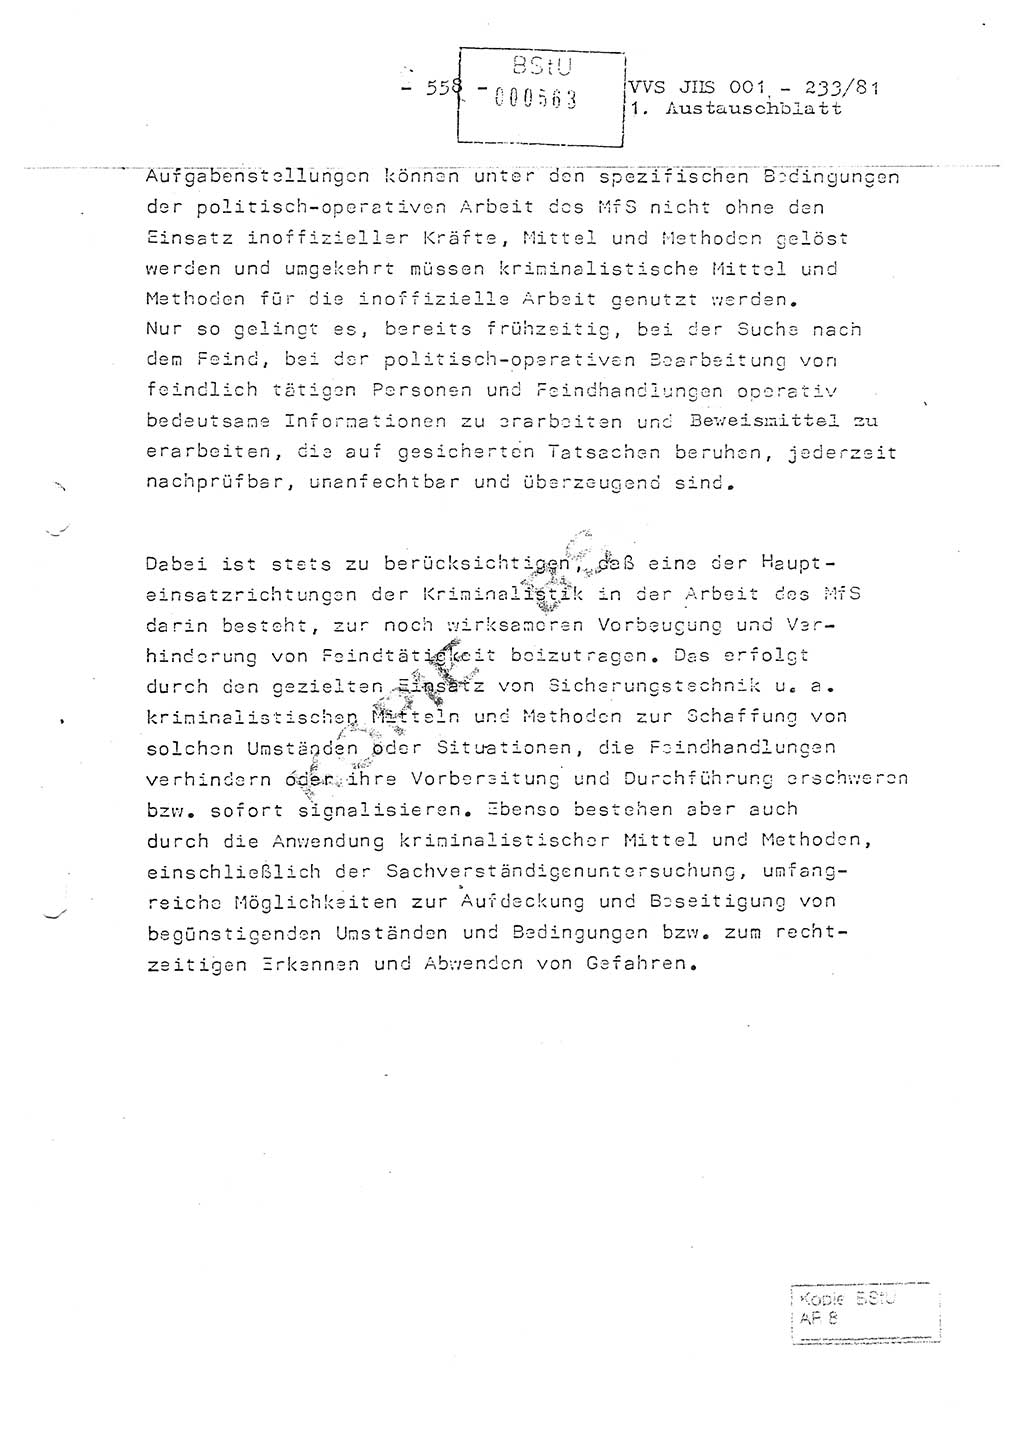 Dissertation Oberstleutnant Horst Zank (JHS), Oberstleutnant Dr. Karl-Heinz Knoblauch (JHS), Oberstleutnant Gustav-Adolf Kowalewski (HA Ⅸ), Oberstleutnant Wolfgang Plötner (HA Ⅸ), Ministerium für Staatssicherheit (MfS) [Deutsche Demokratische Republik (DDR)], Juristische Hochschule (JHS), Vertrauliche Verschlußsache (VVS) o001-233/81, Potsdam 1981, Blatt 558 (Diss. MfS DDR JHS VVS o001-233/81 1981, Bl. 558)